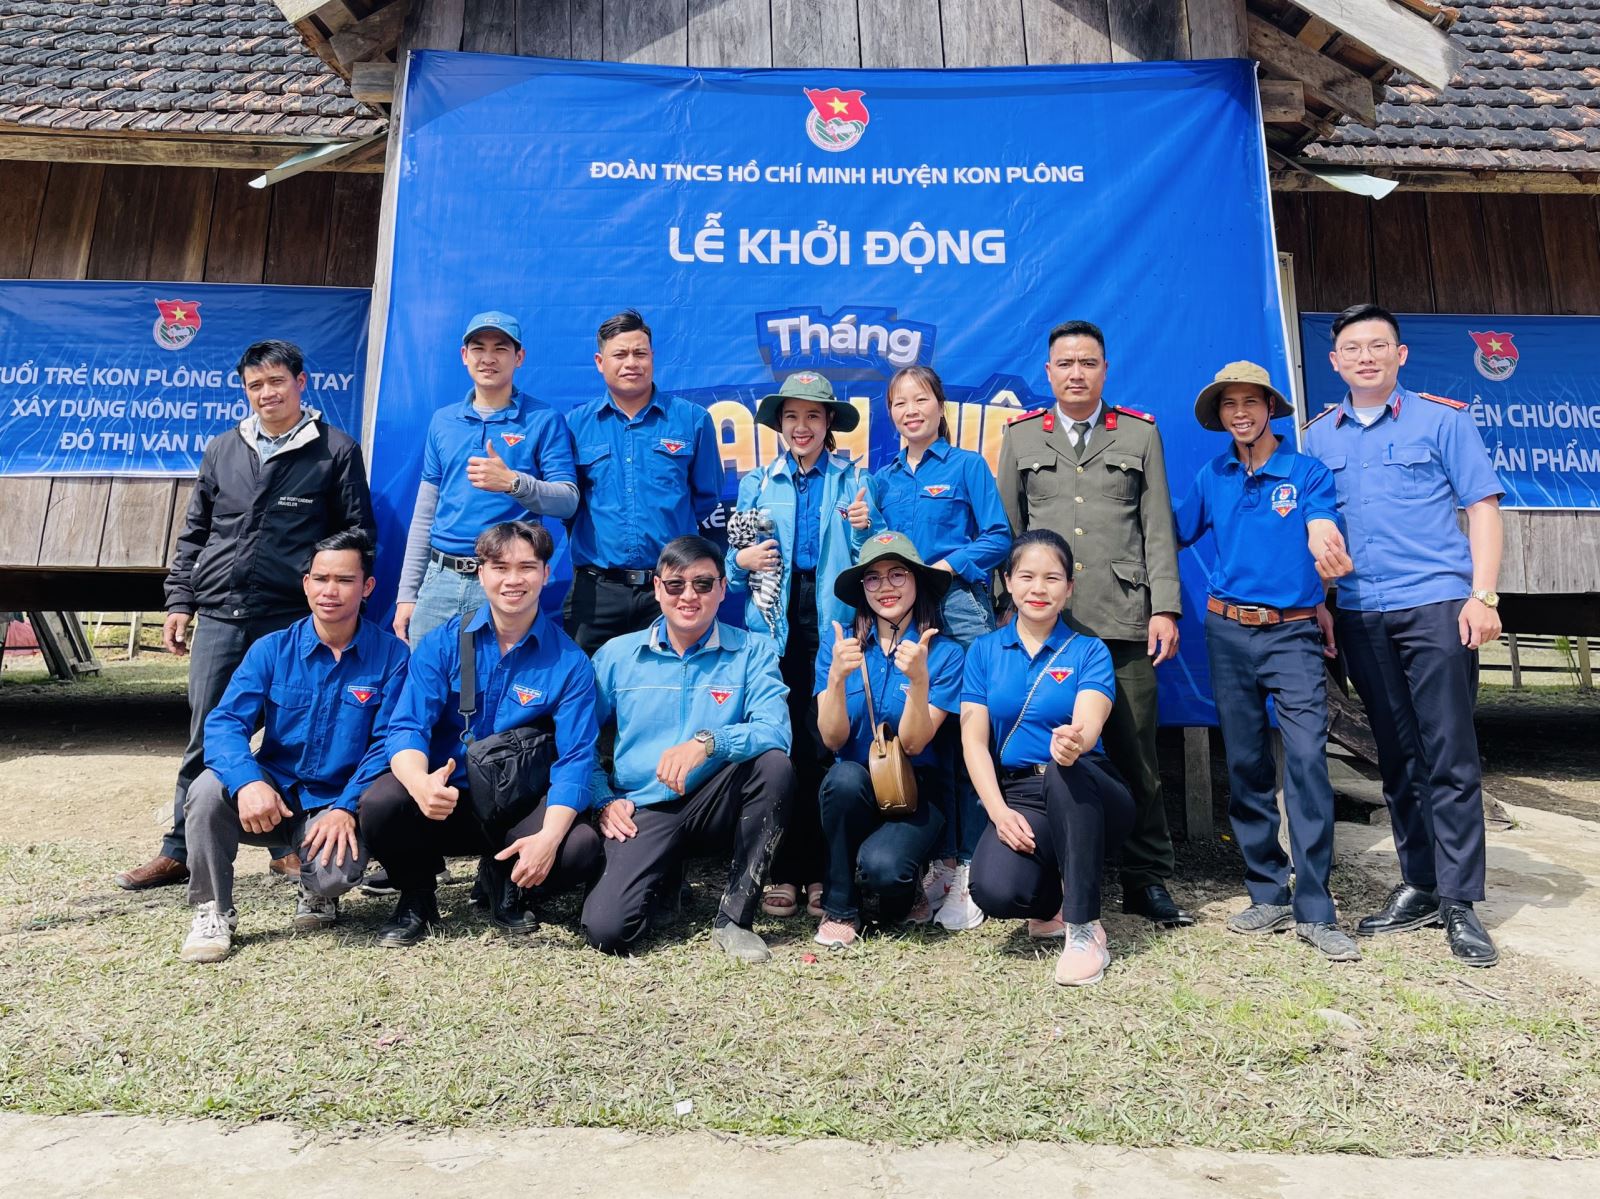 Huyện đoàn Kon Plông khởi động tháng thanh niên năm 2023